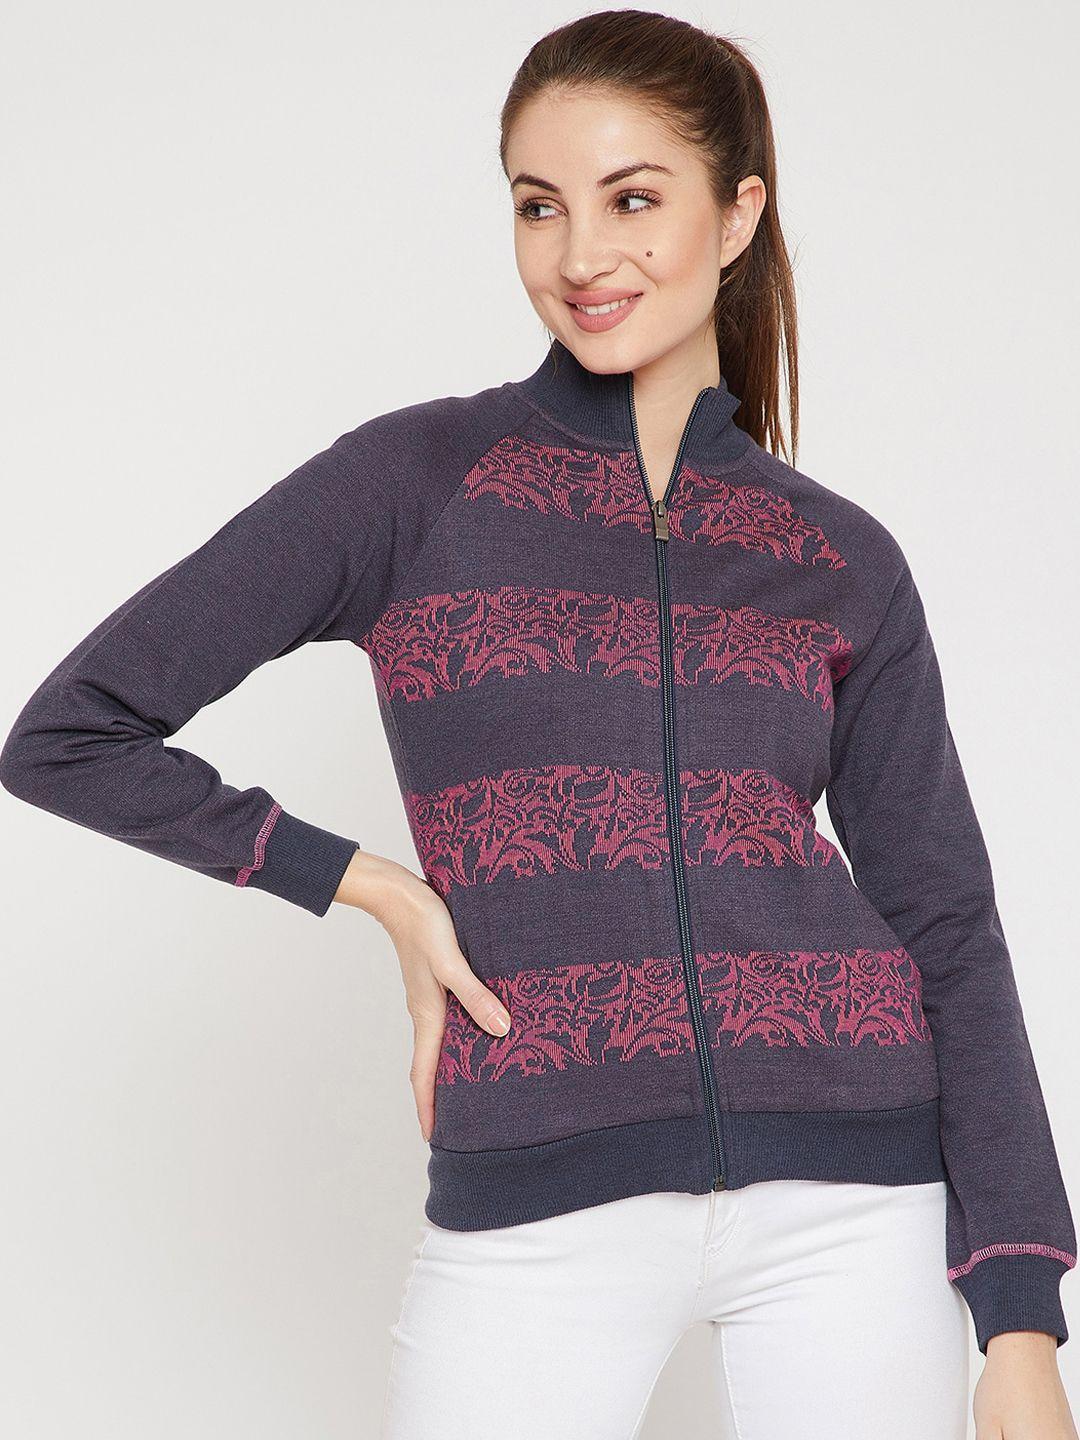 carlton-london-women-pink-printed-sweatshirt